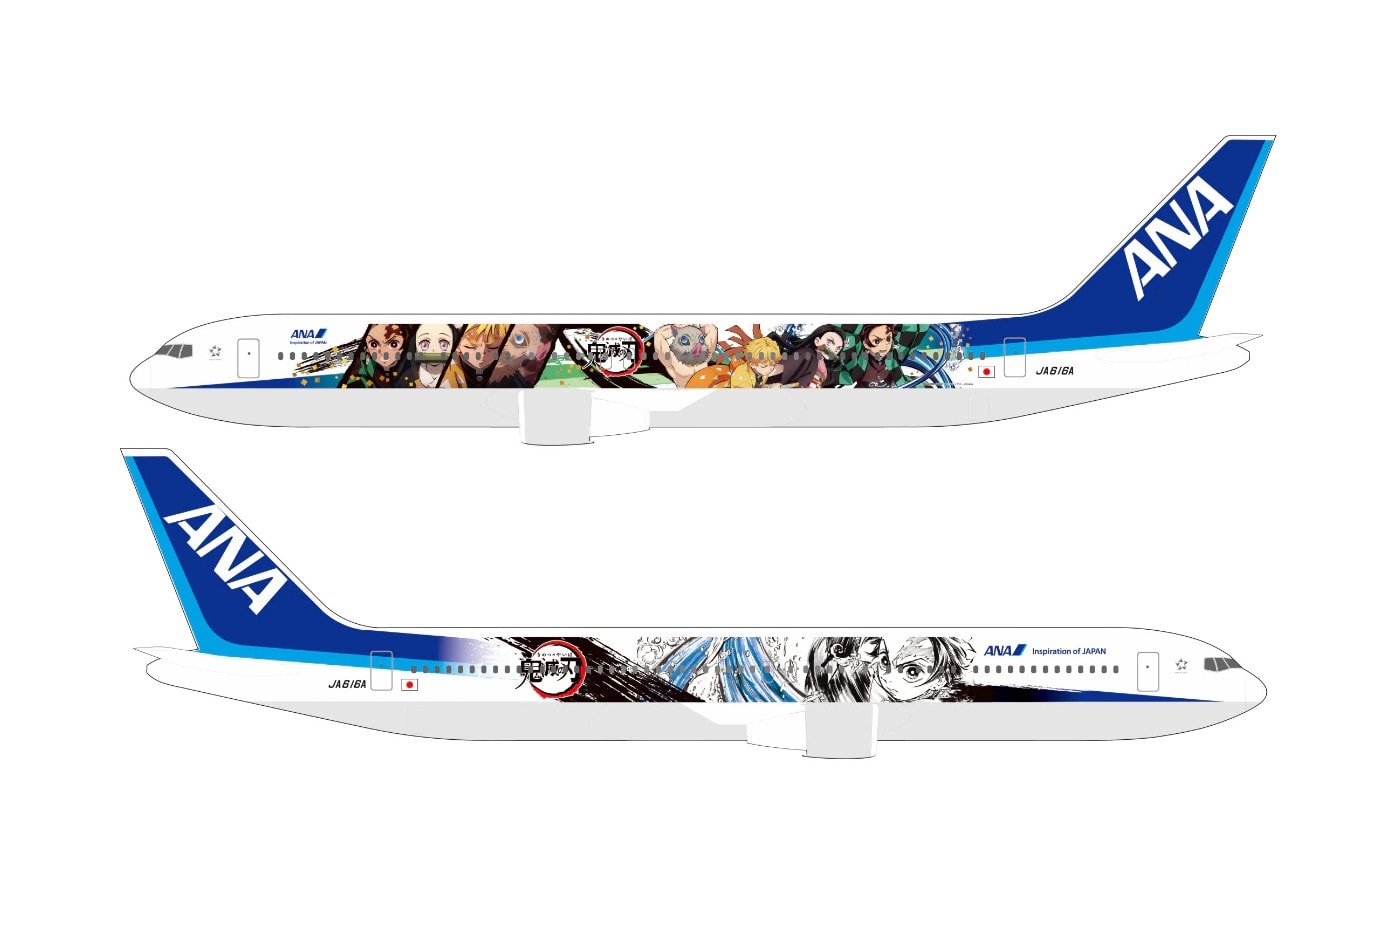 日本航空公司 ANA 攜手《鬼滅之刃》打造主題彩繪班機